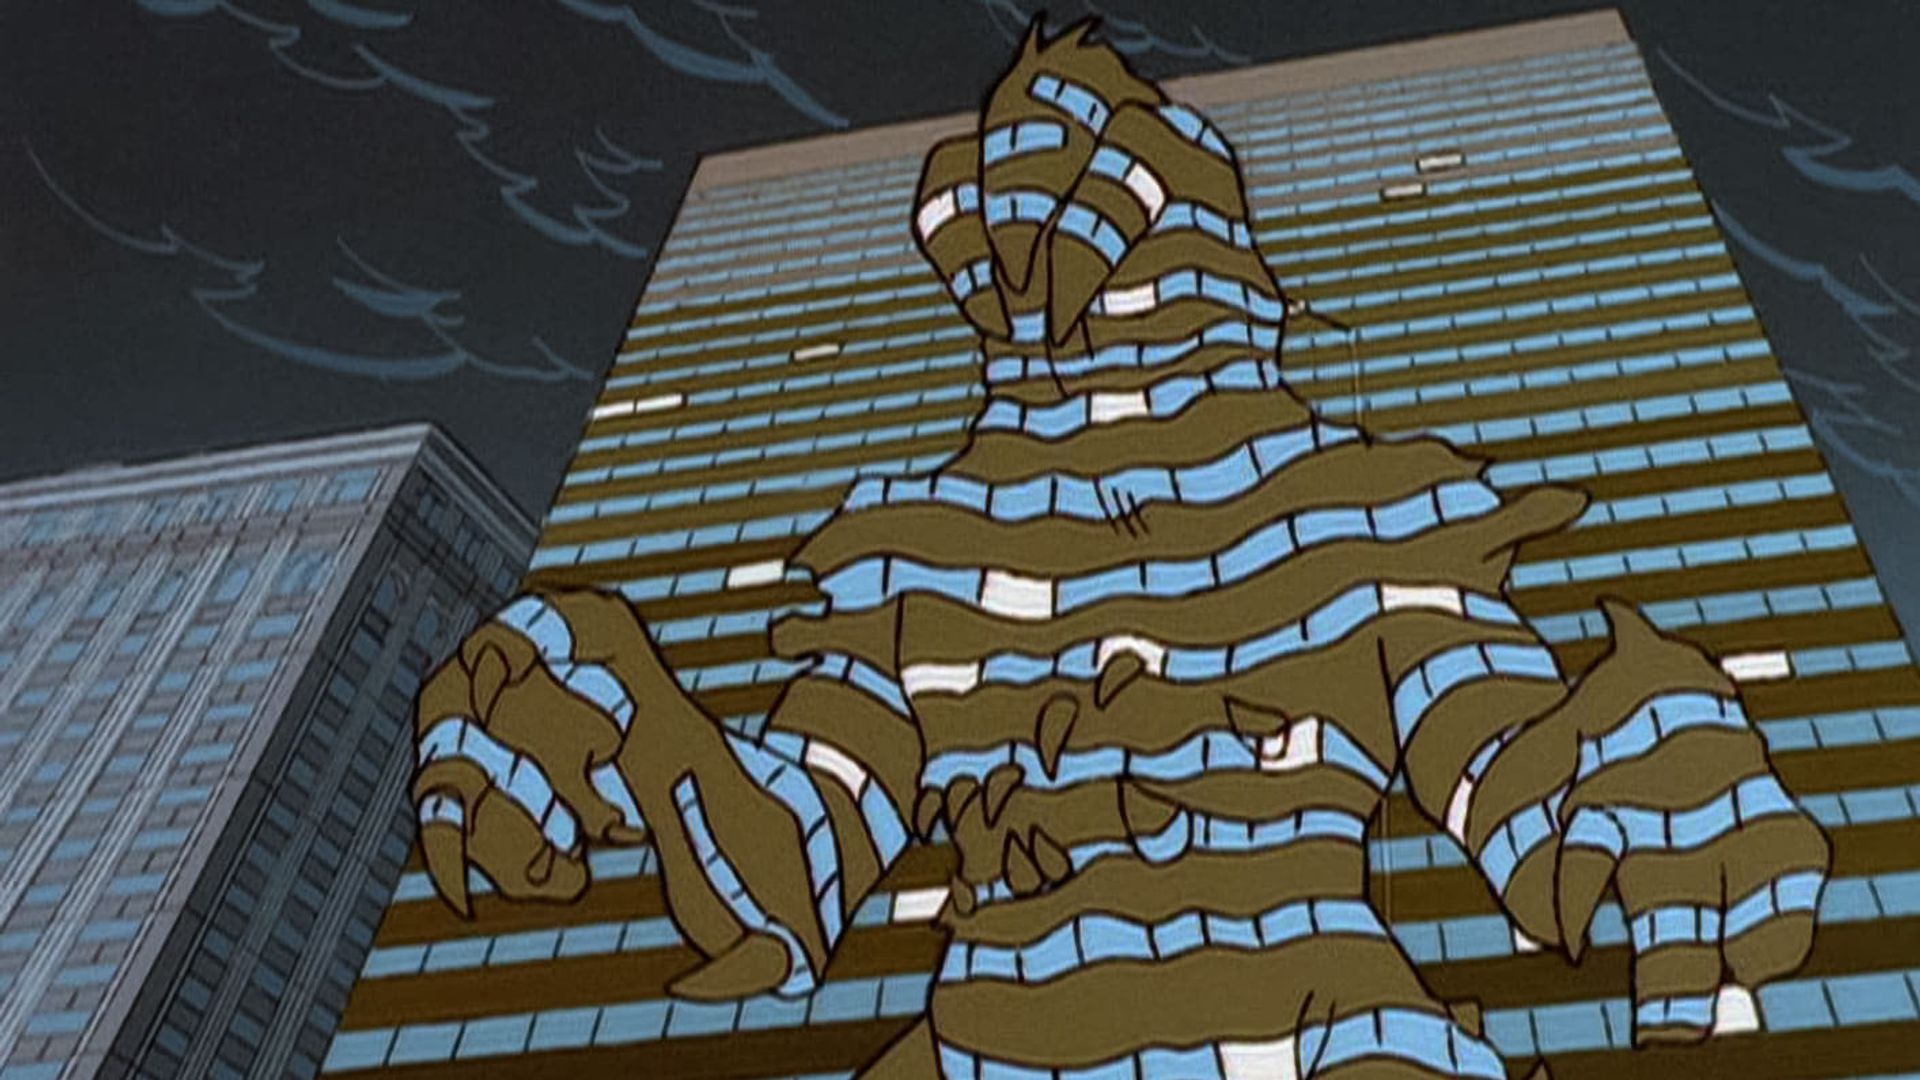 Godzilla: The Series background